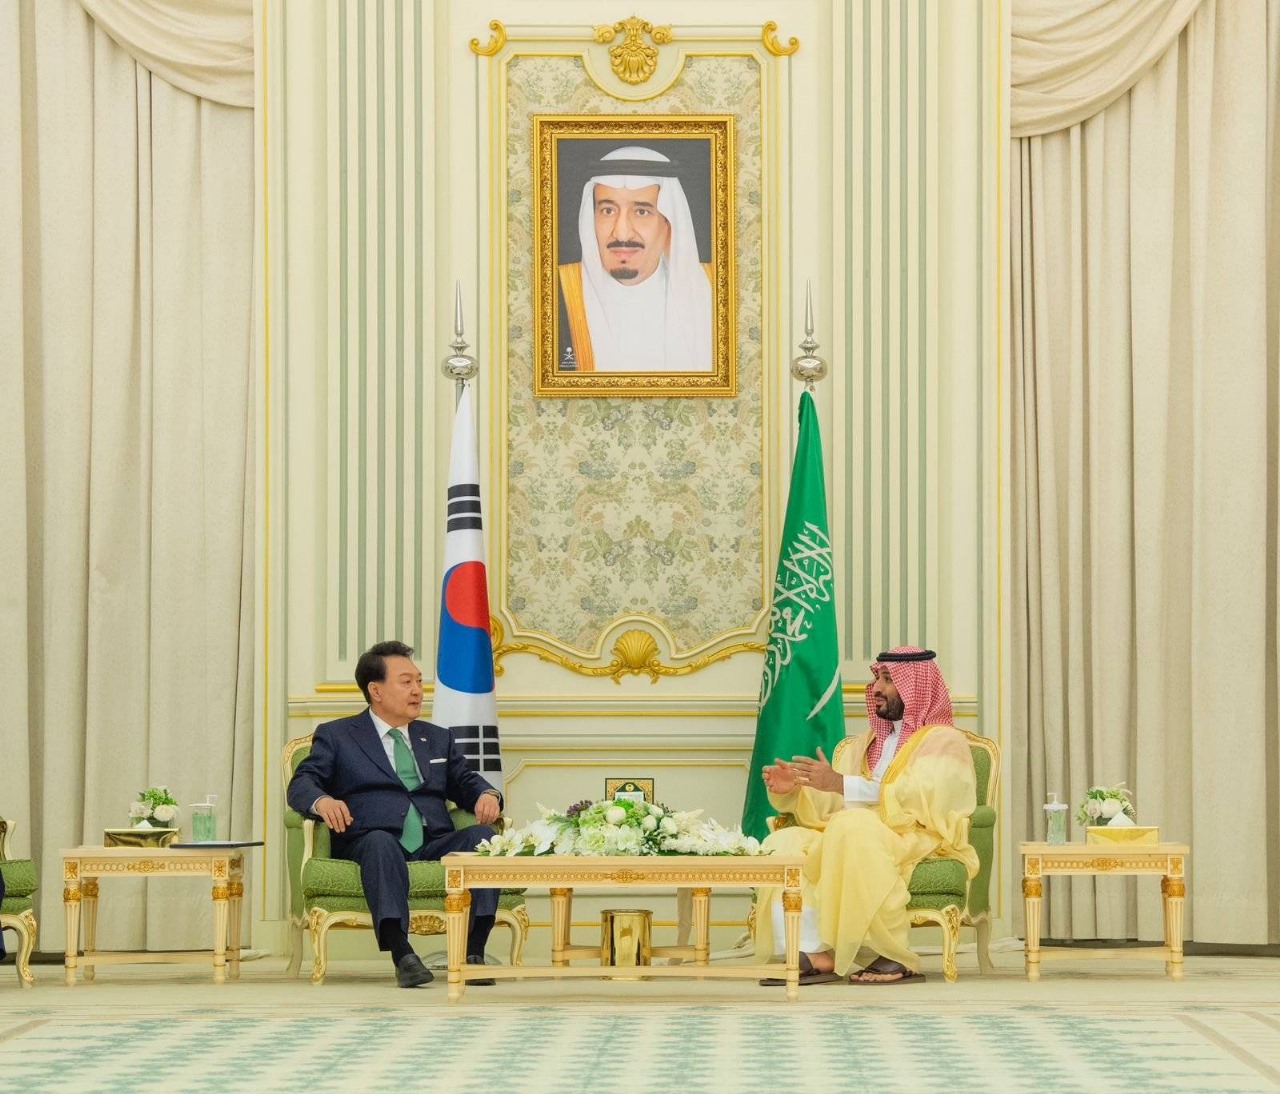 السعودية وكوريا الجنوبية تعززان شراكتهما بعدد من الاتفاقيات